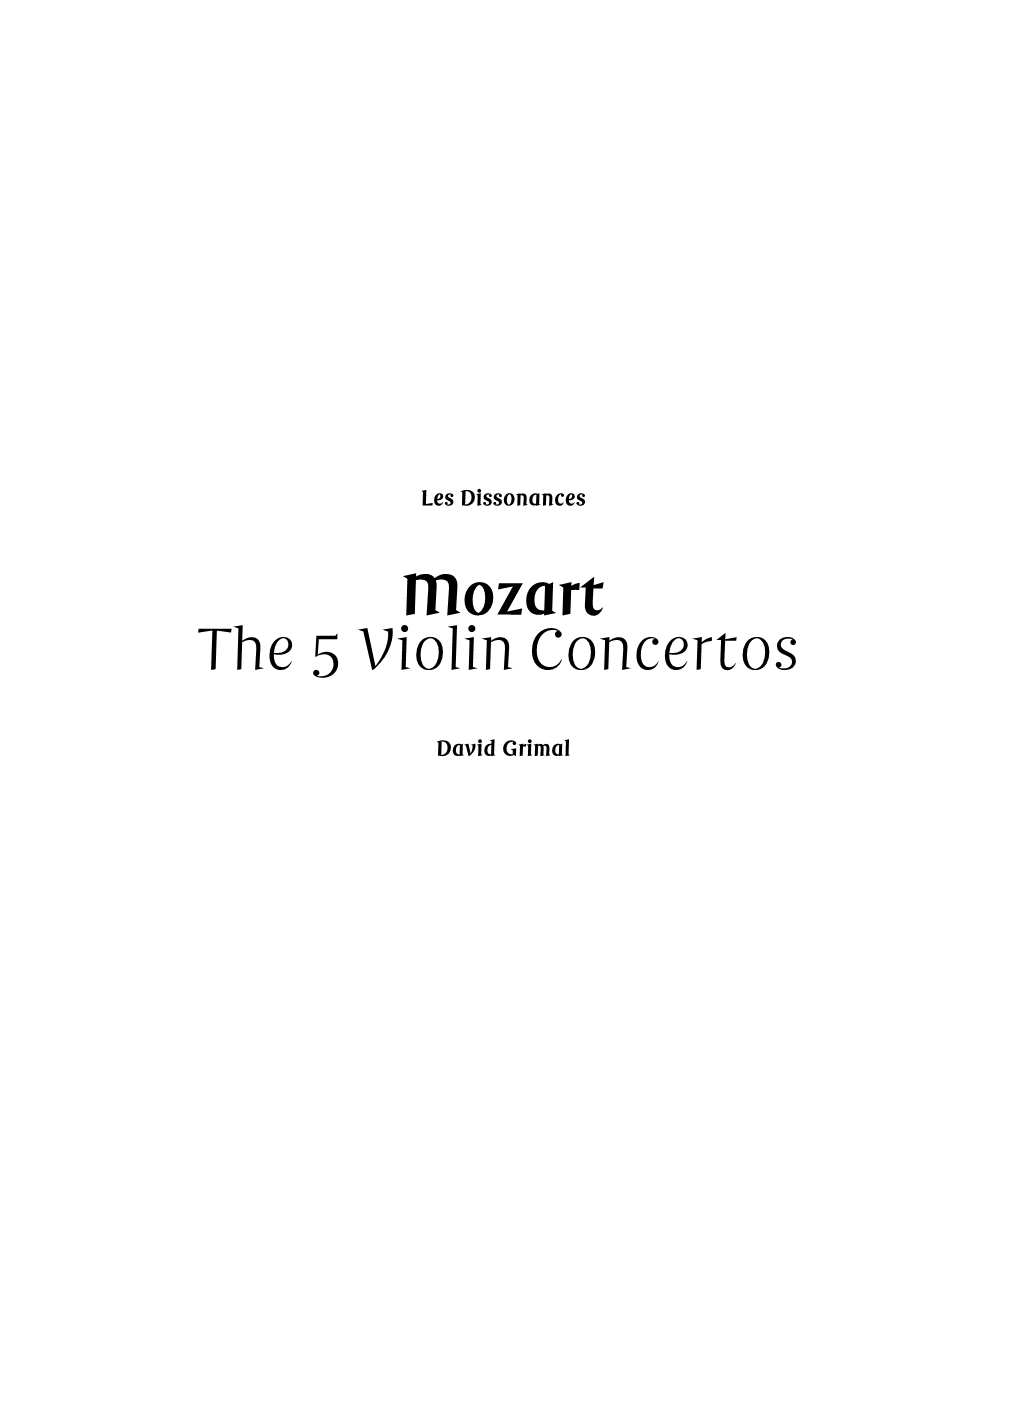 Mozart the 5 Violin Concertos